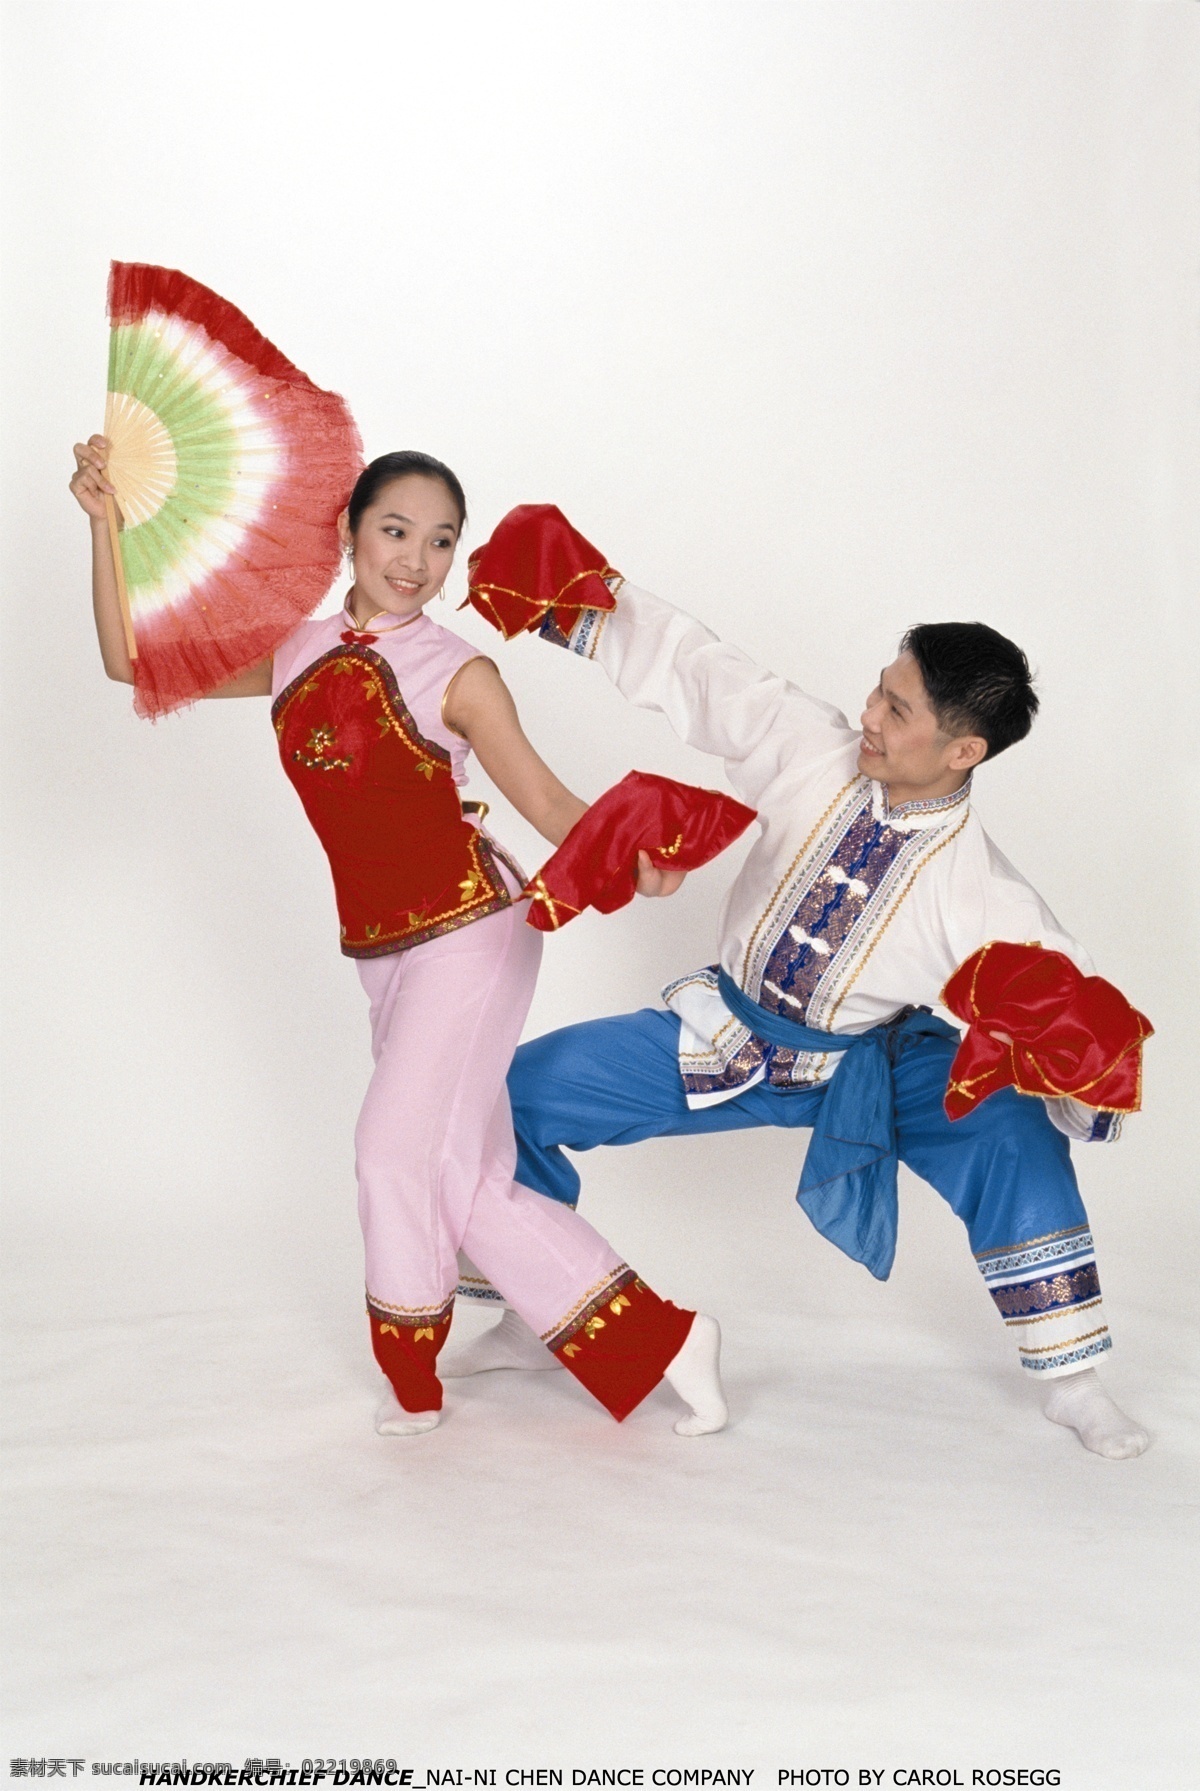 中国 传统 文化 表演 艺术 瑰宝 节庆 华人 华裔 舞蹈 扇 手绢 扇子 男 女 青年 中国节庆 节日庆祝 文化艺术